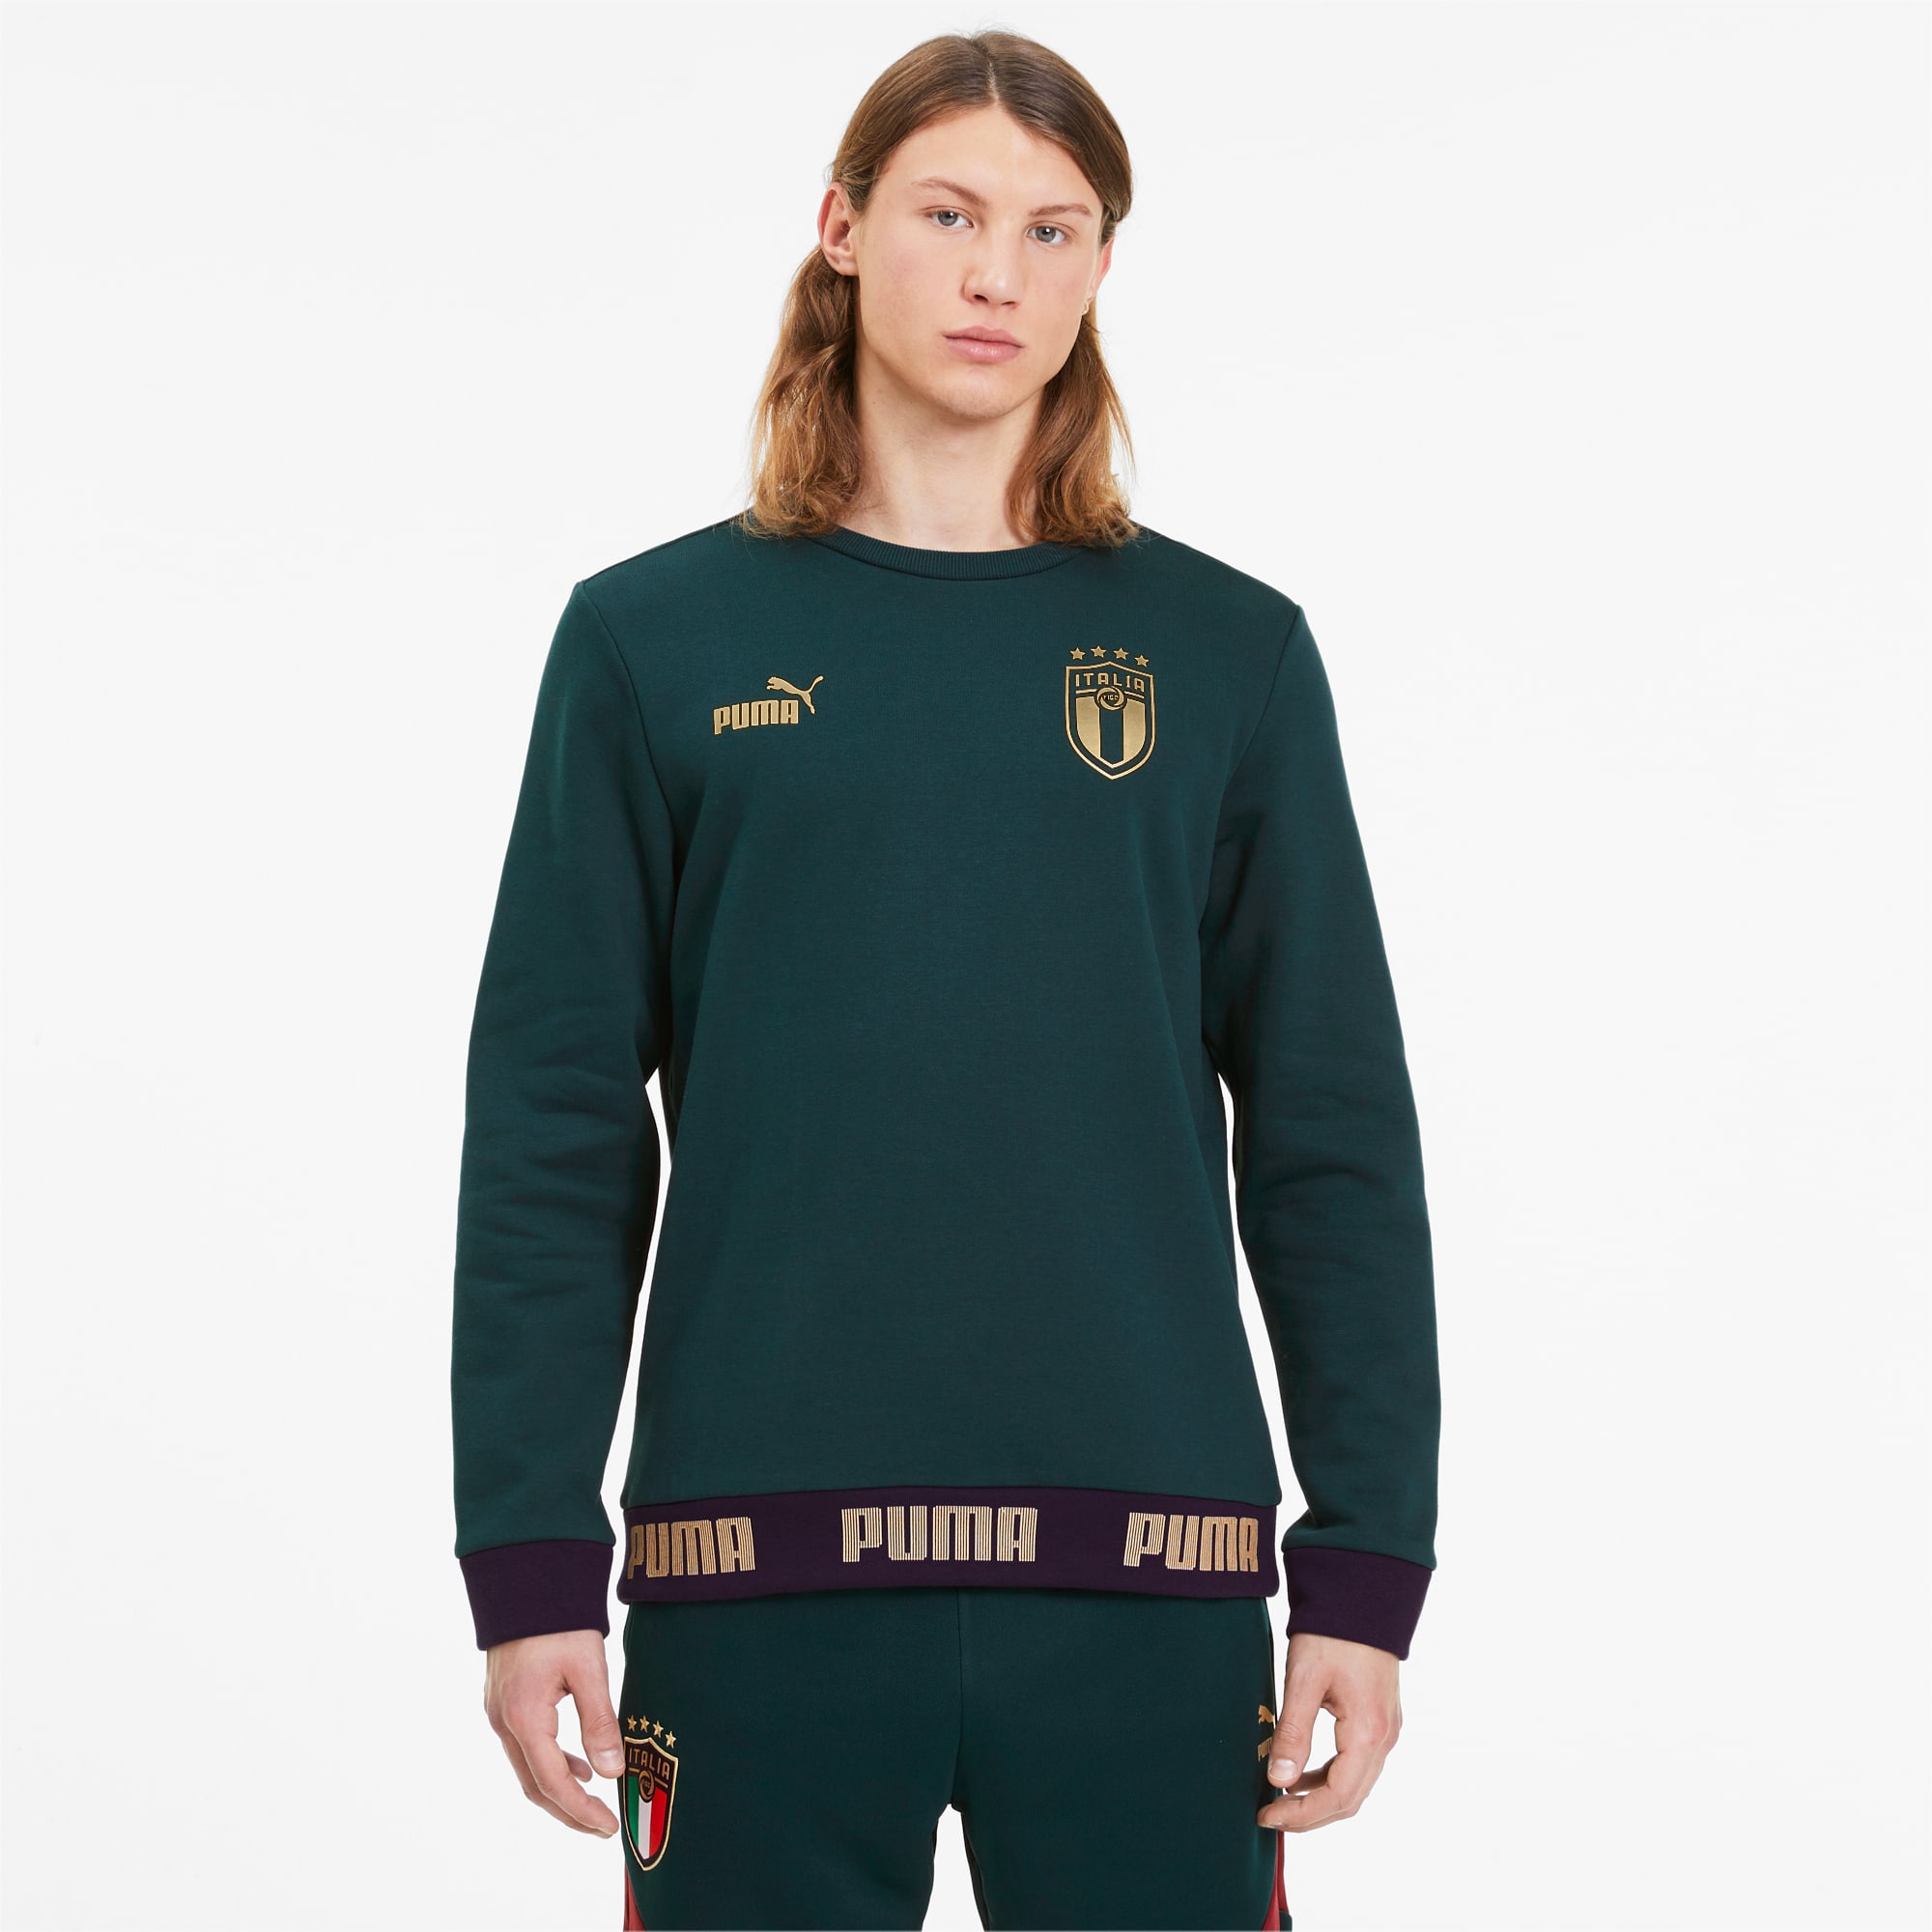 PUMA Sweatshirt Italia Football Culture pour Homme, Vert/Or, Taille S, Vêtements